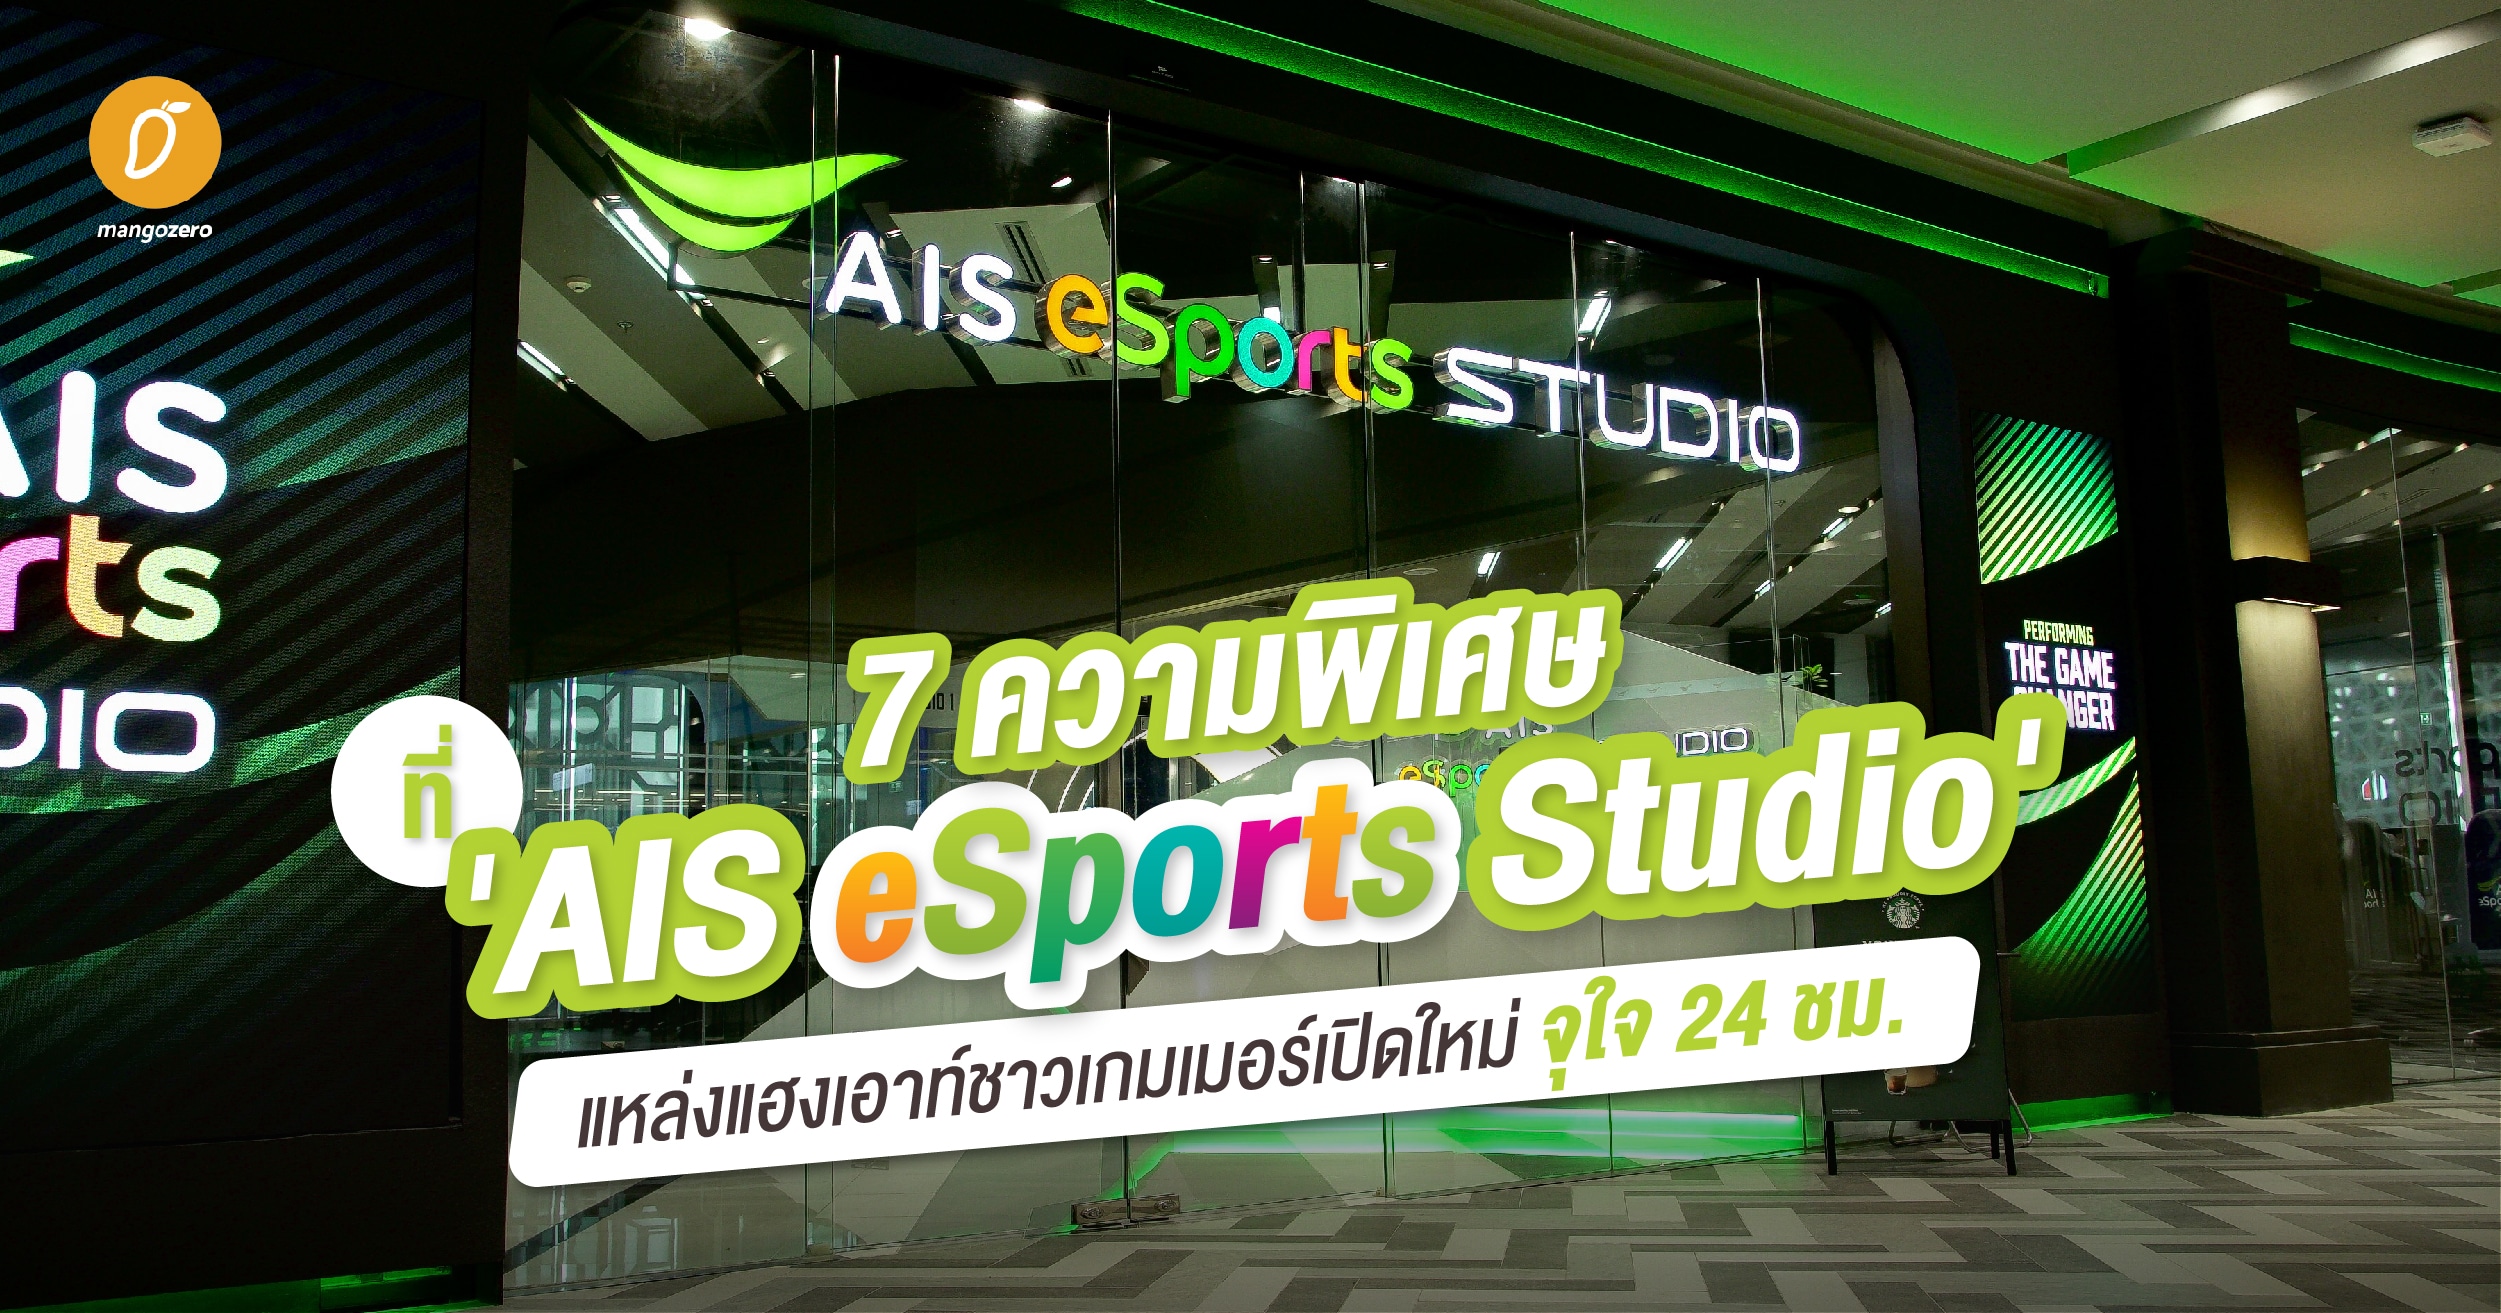 ais esport studio มีที่ไหนบ้าง